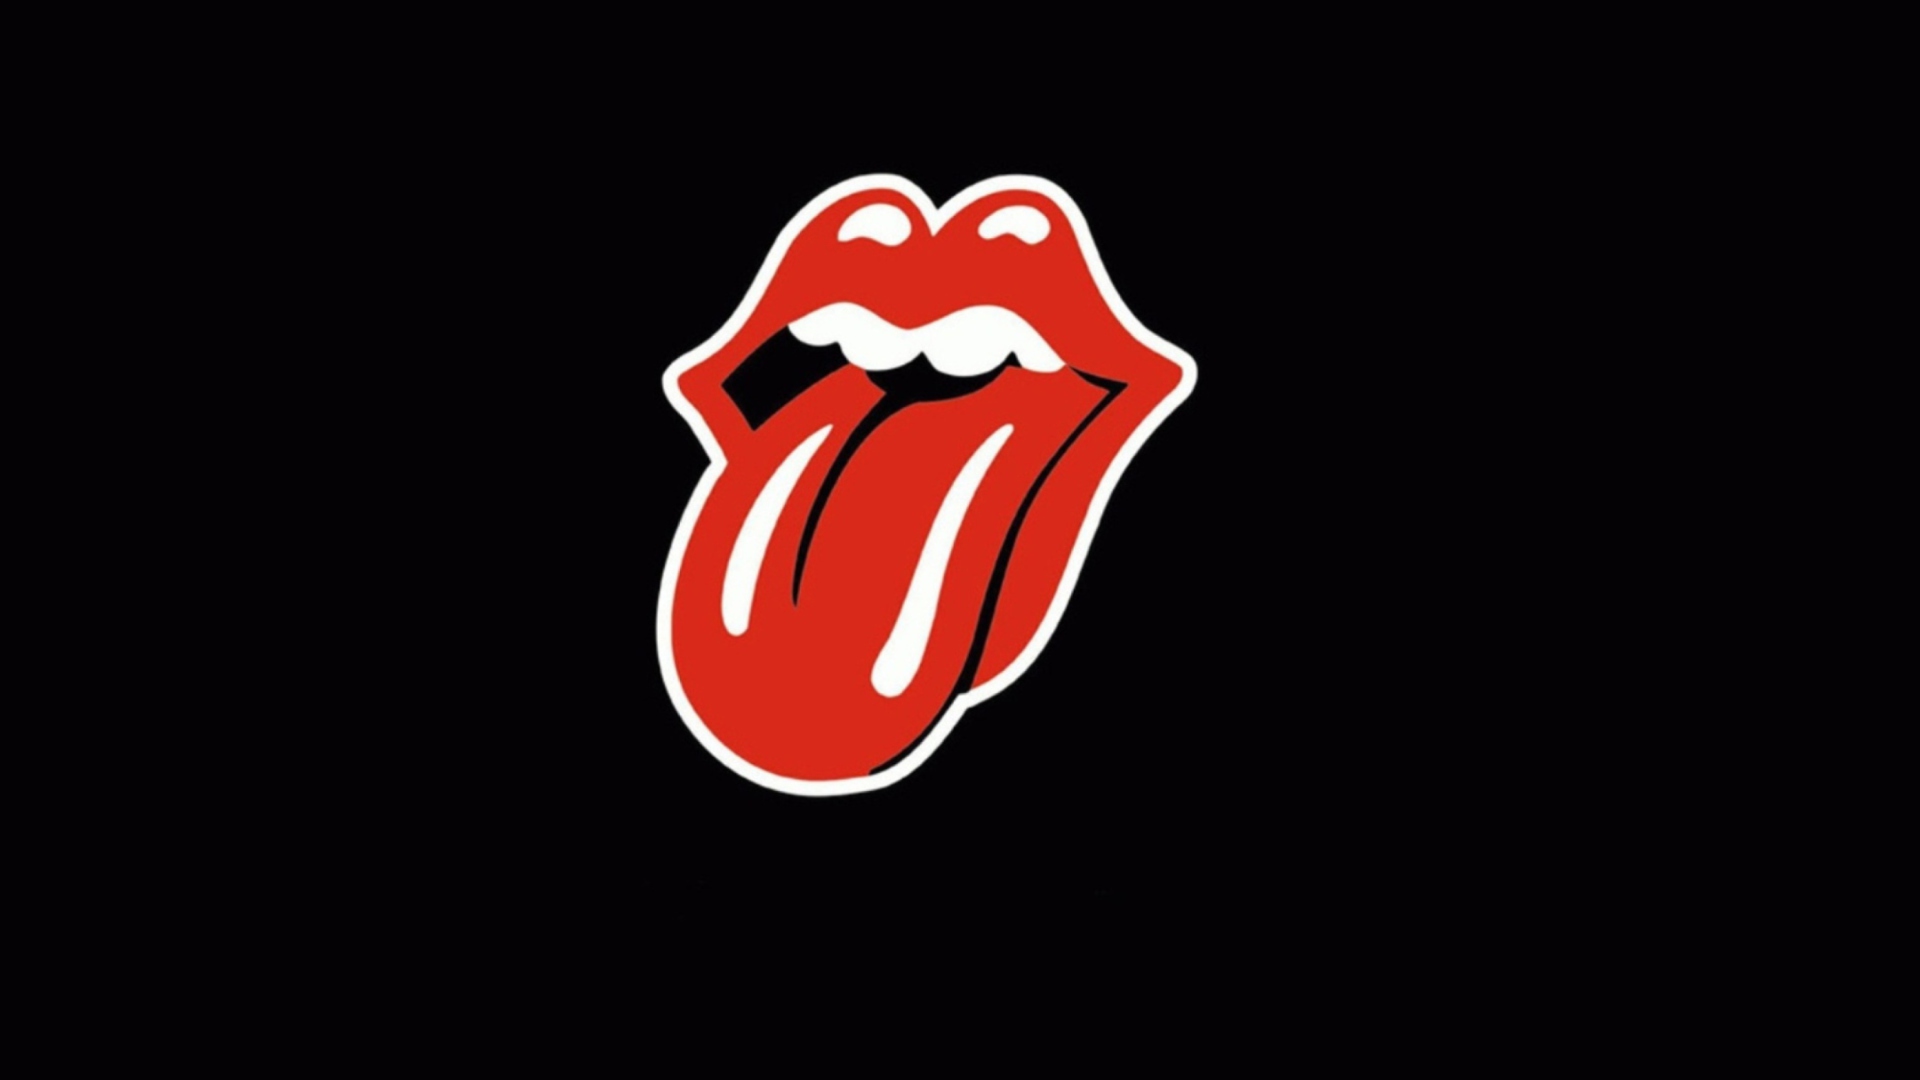 Rolling Stones wallpaper 1920x1080